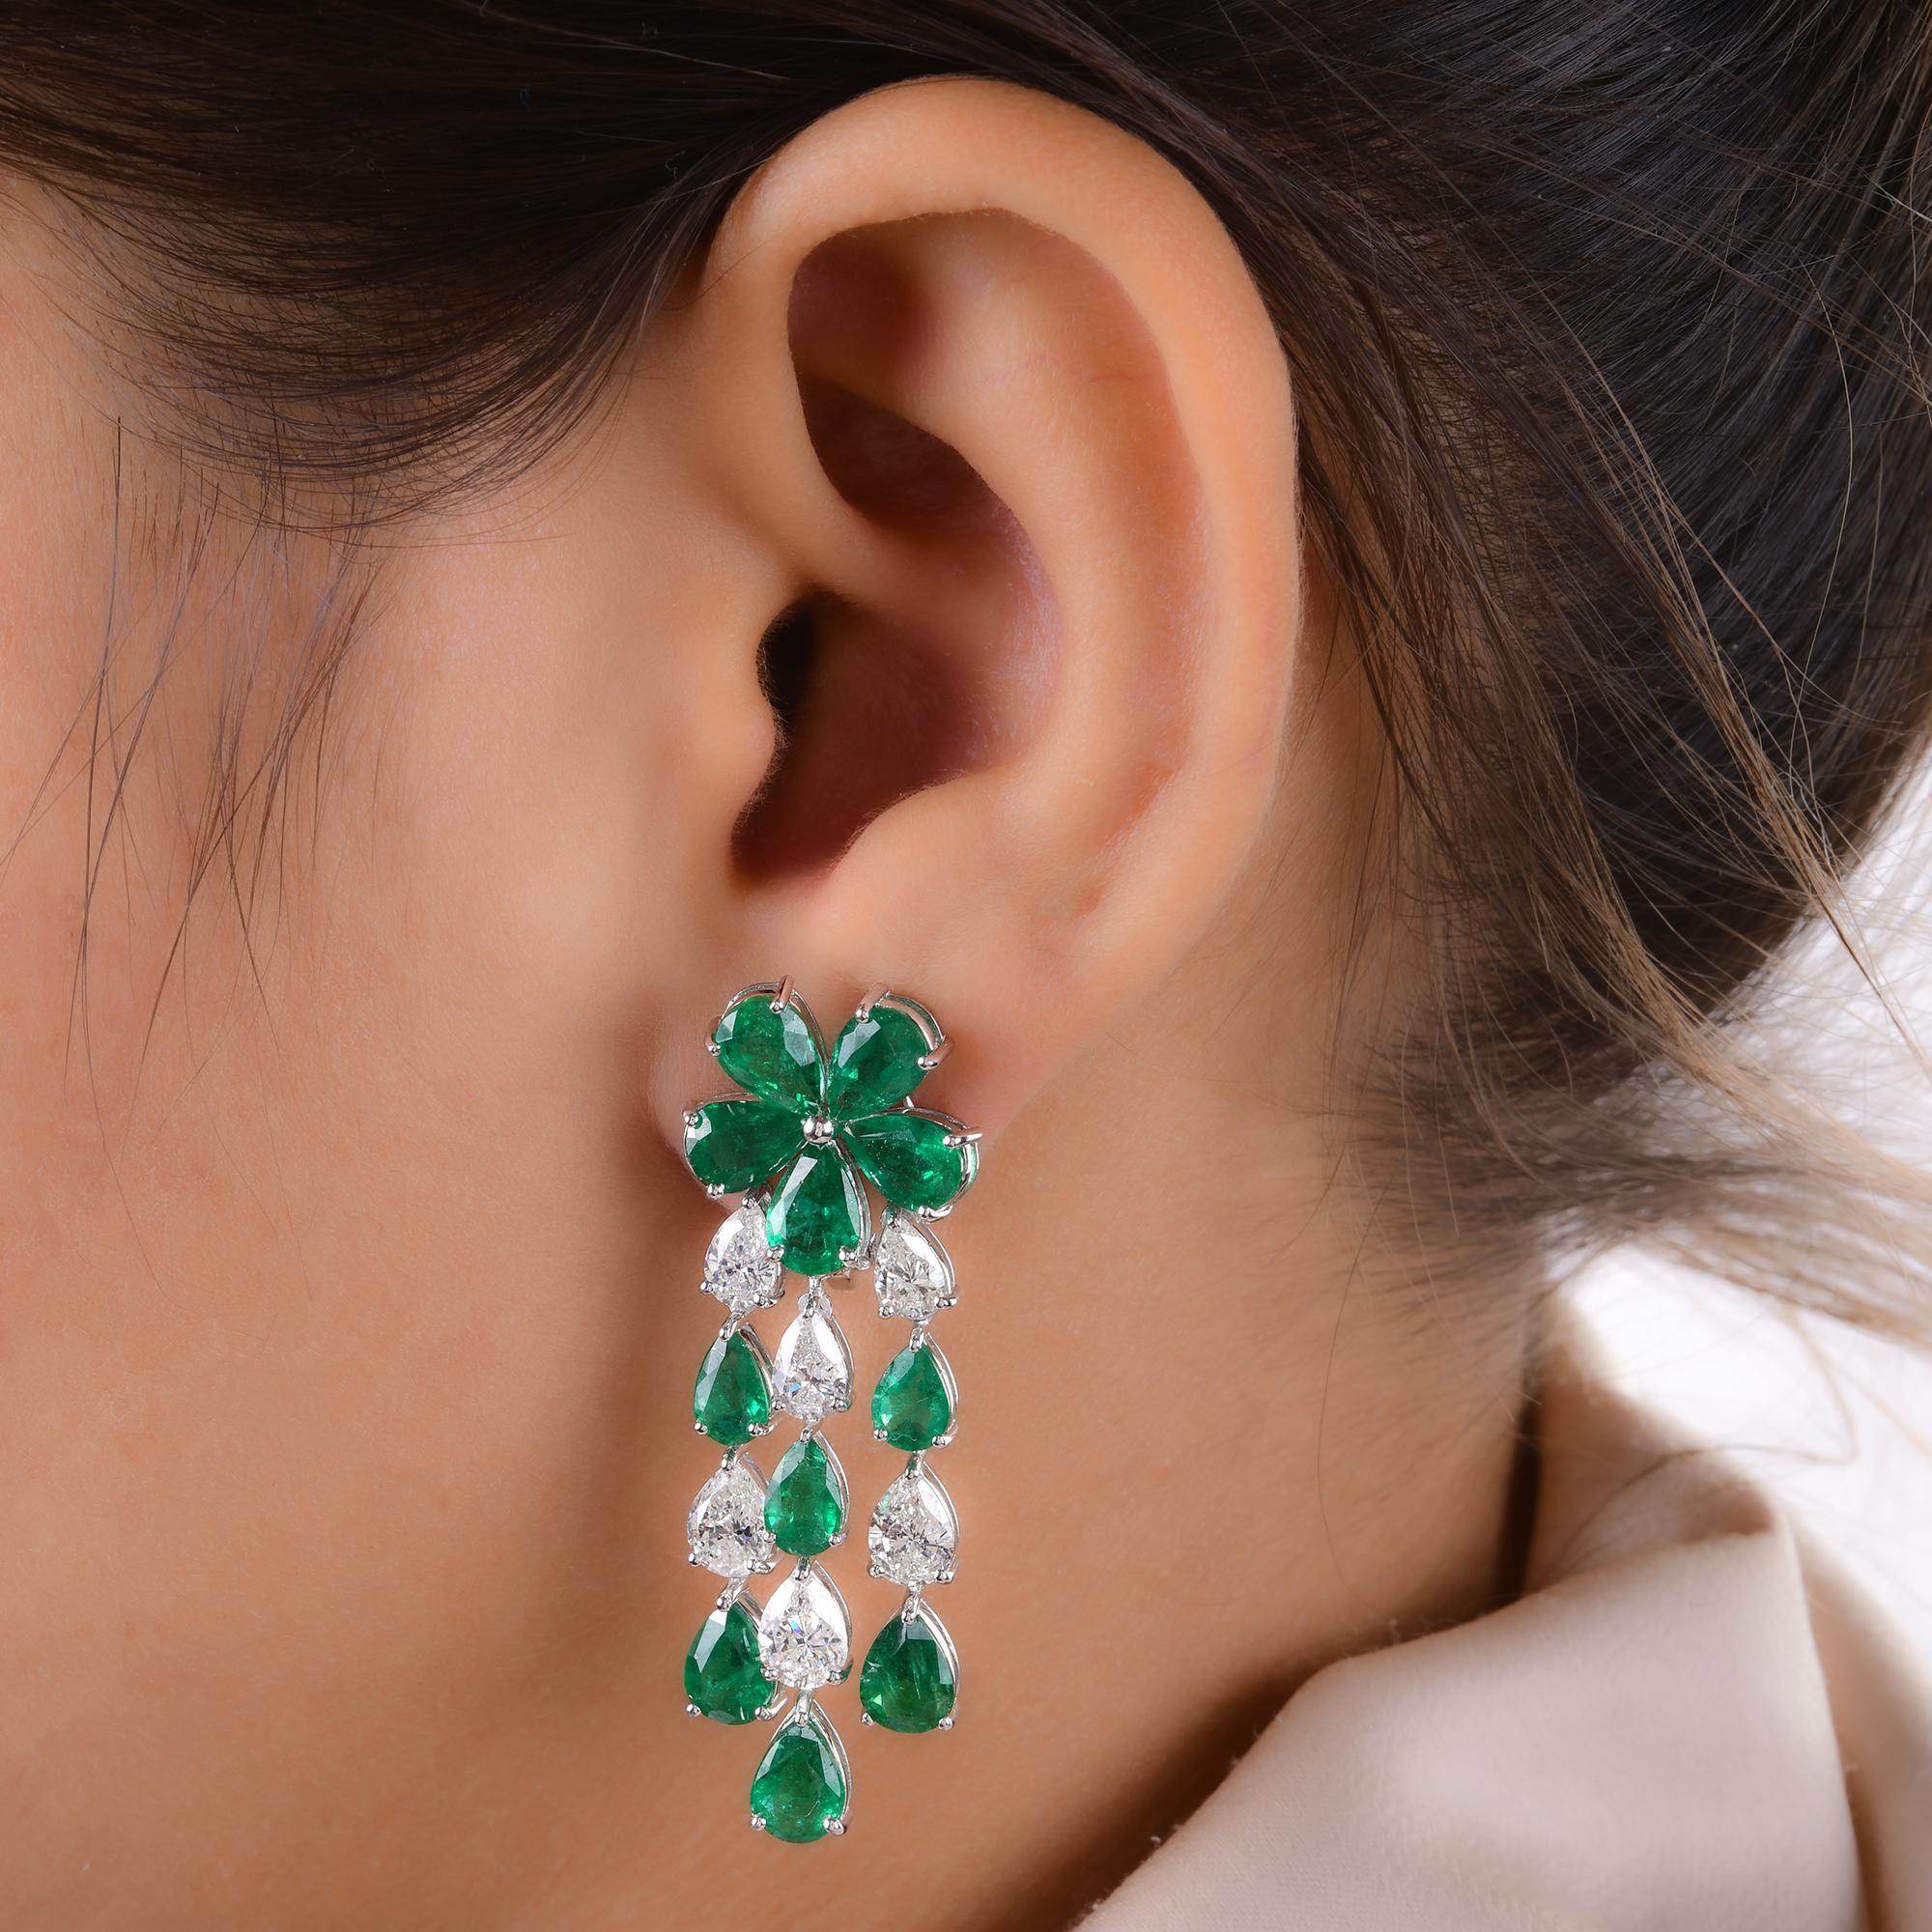 Pear Cut Pear Zambian Emerald Gemstone Chandelier Earrings Diamond 18 Karat White Gold For Sale